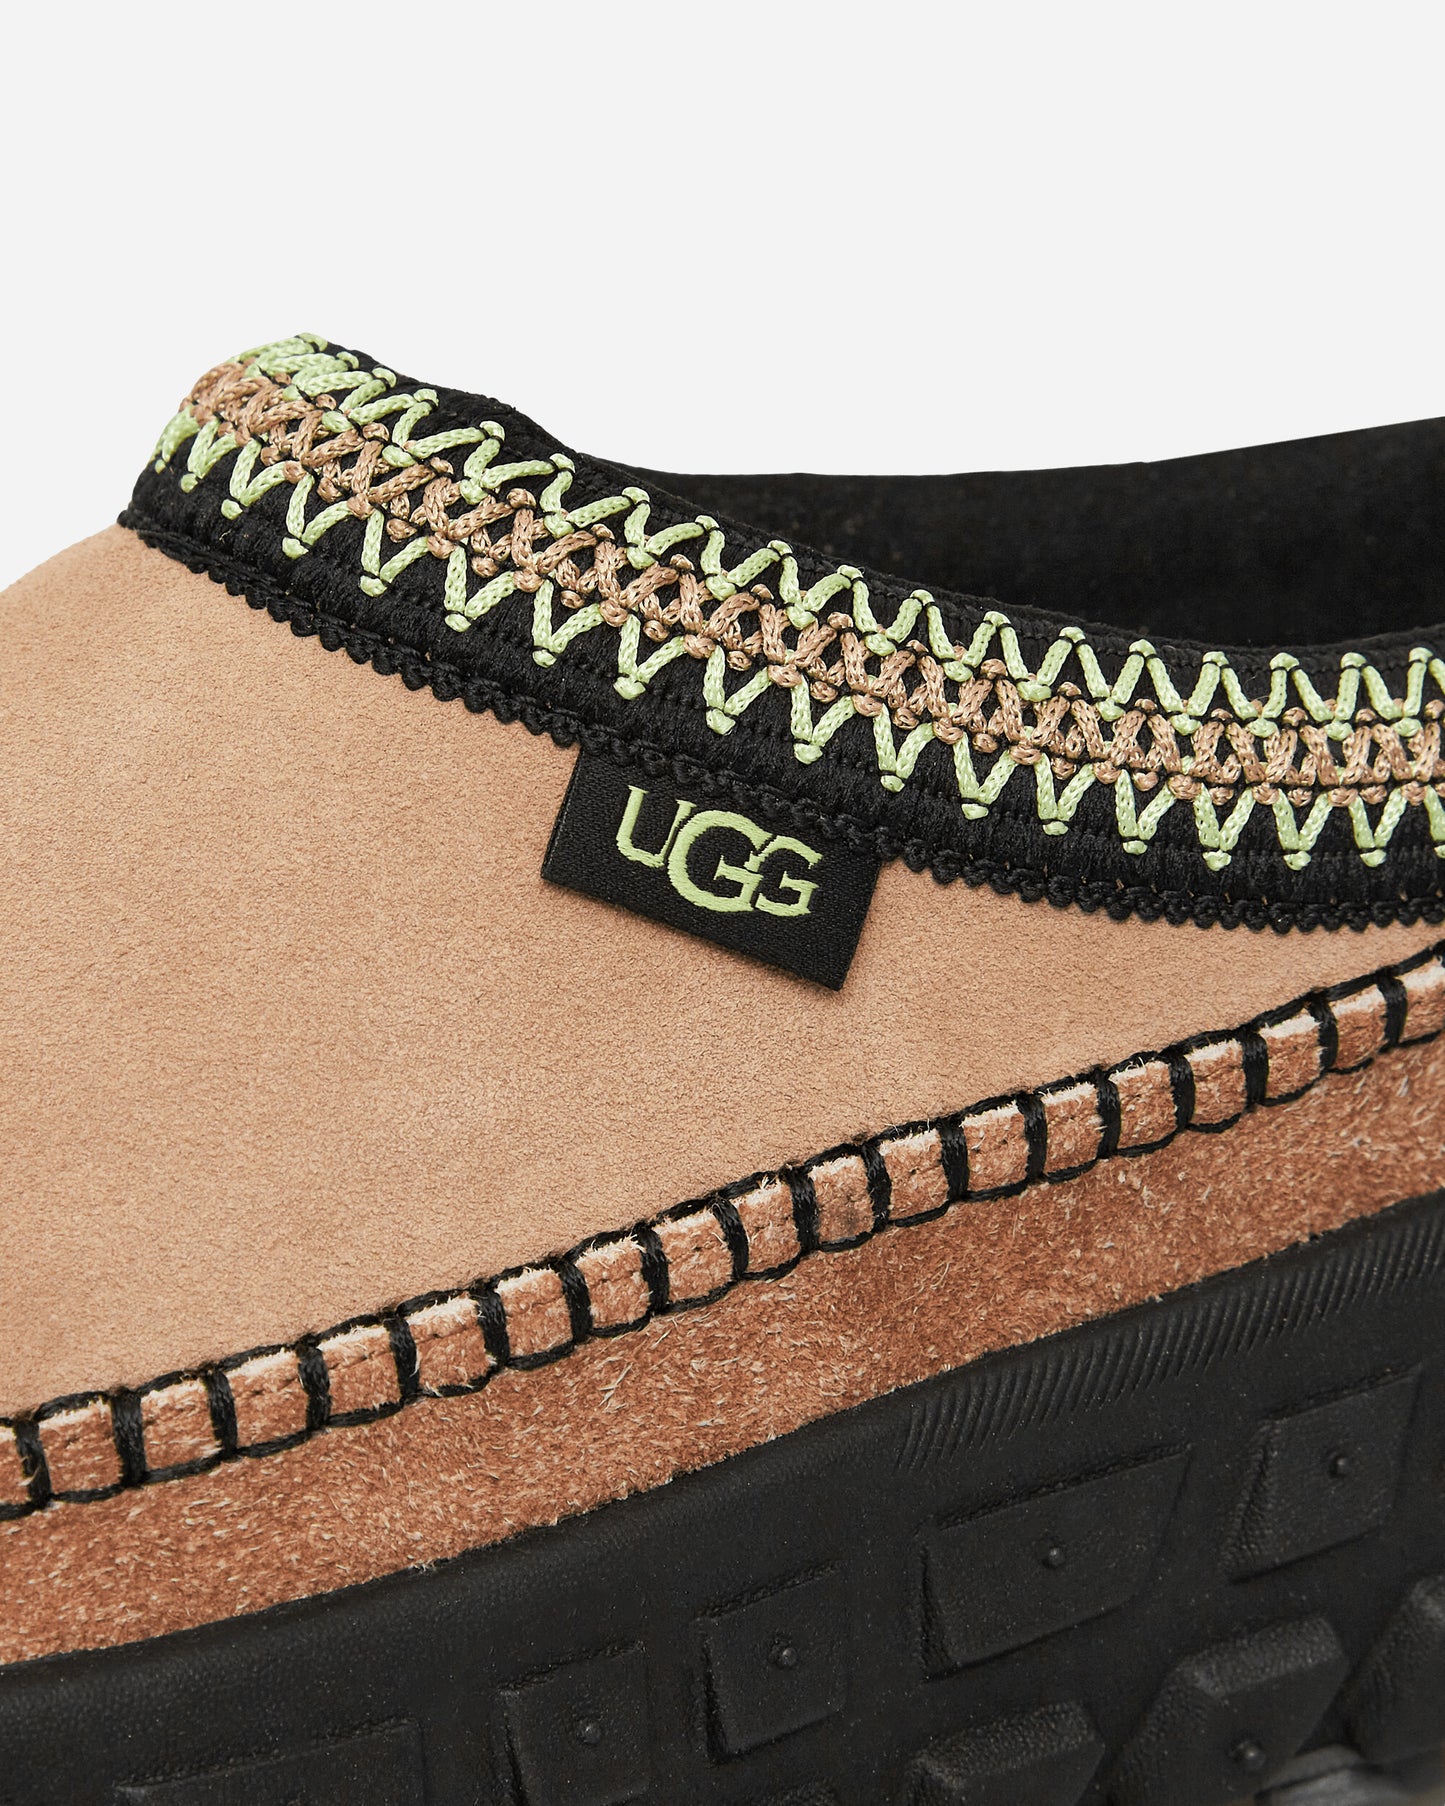 UGG Wmns Venture Daze Sand/Black Classic Shoes Flat Shoes 1155650 SNDB